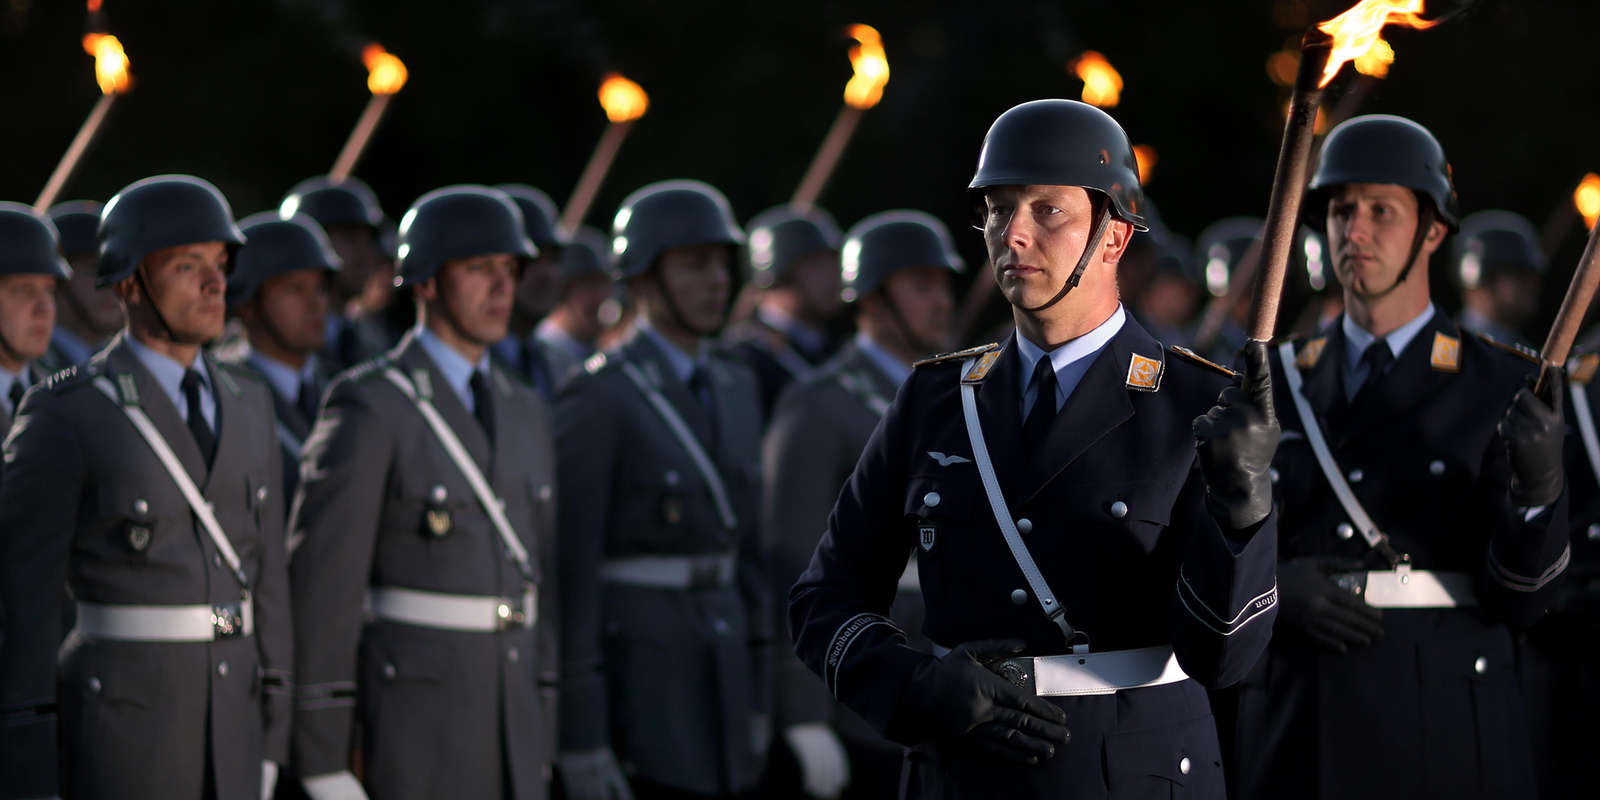 Военнослужащие Бундесвера демонстрирует верность традициям